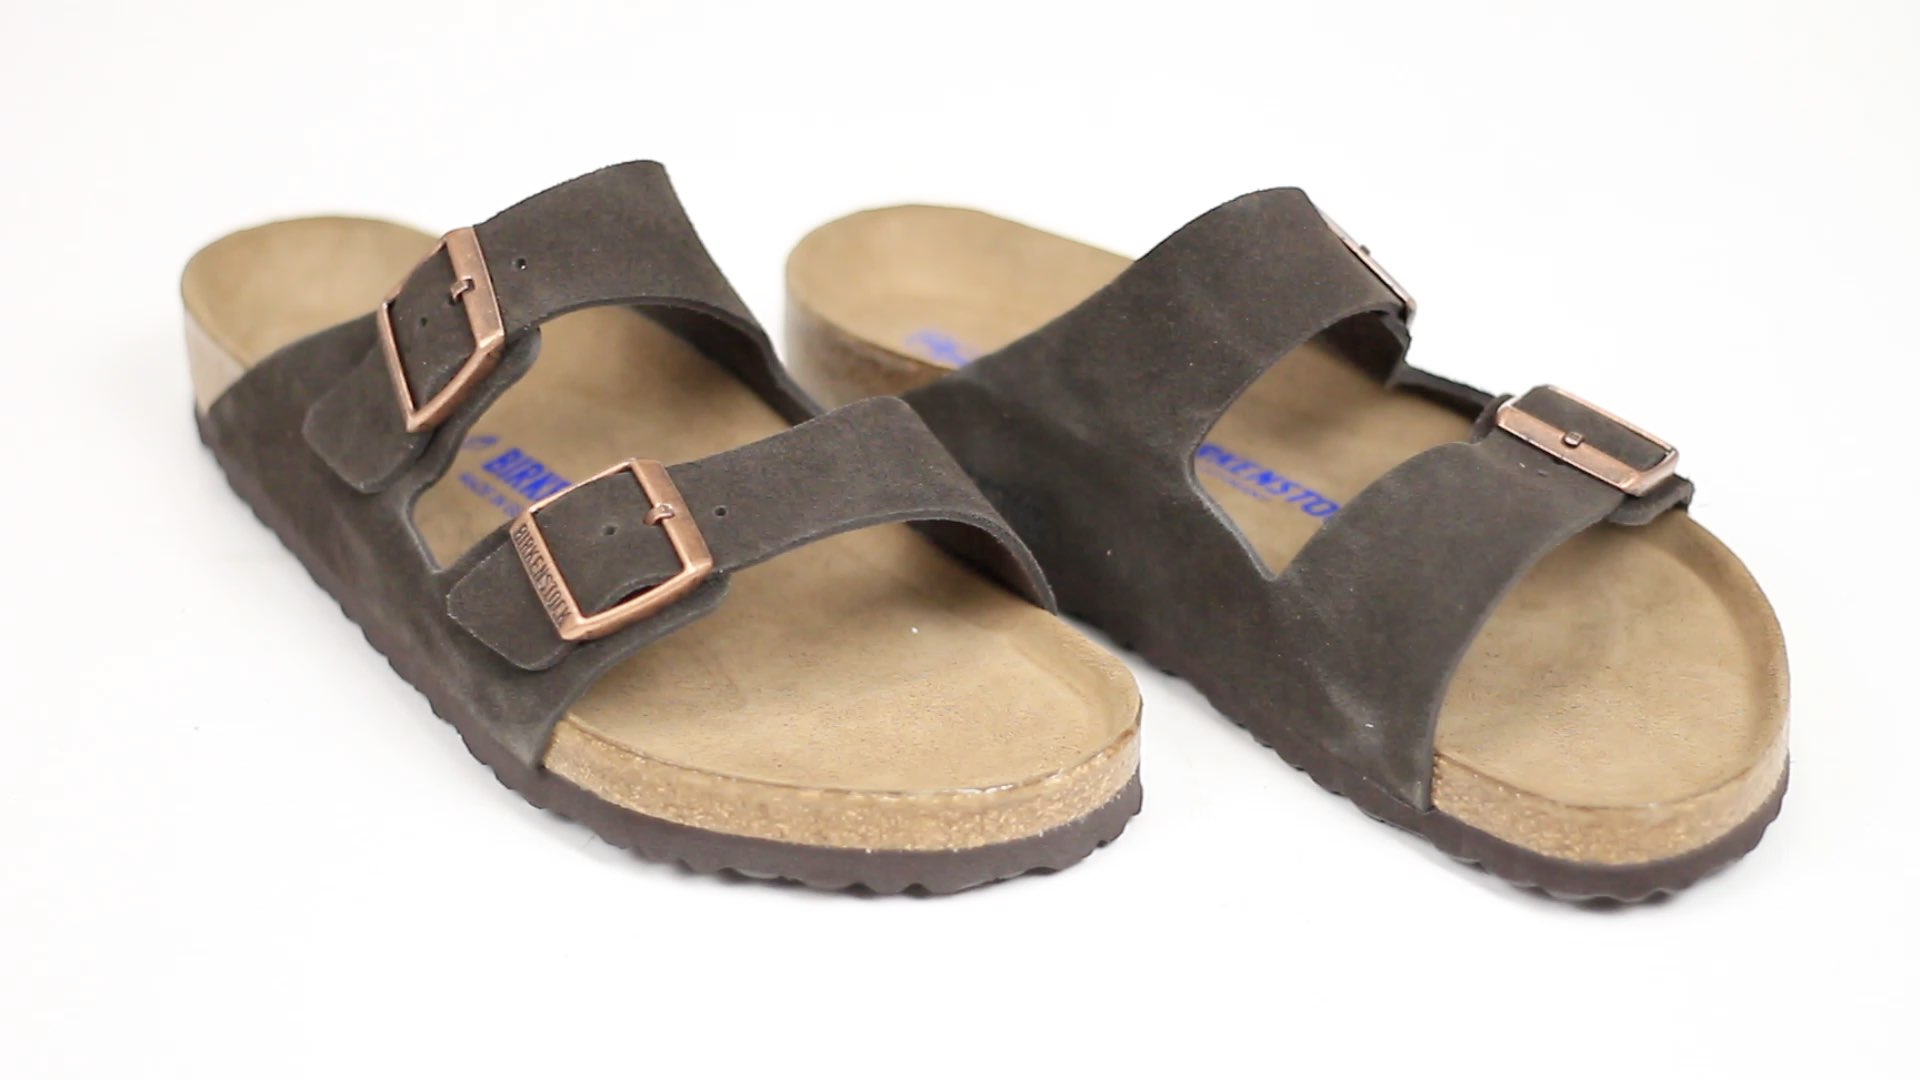 044 Brown birkenstock sandals